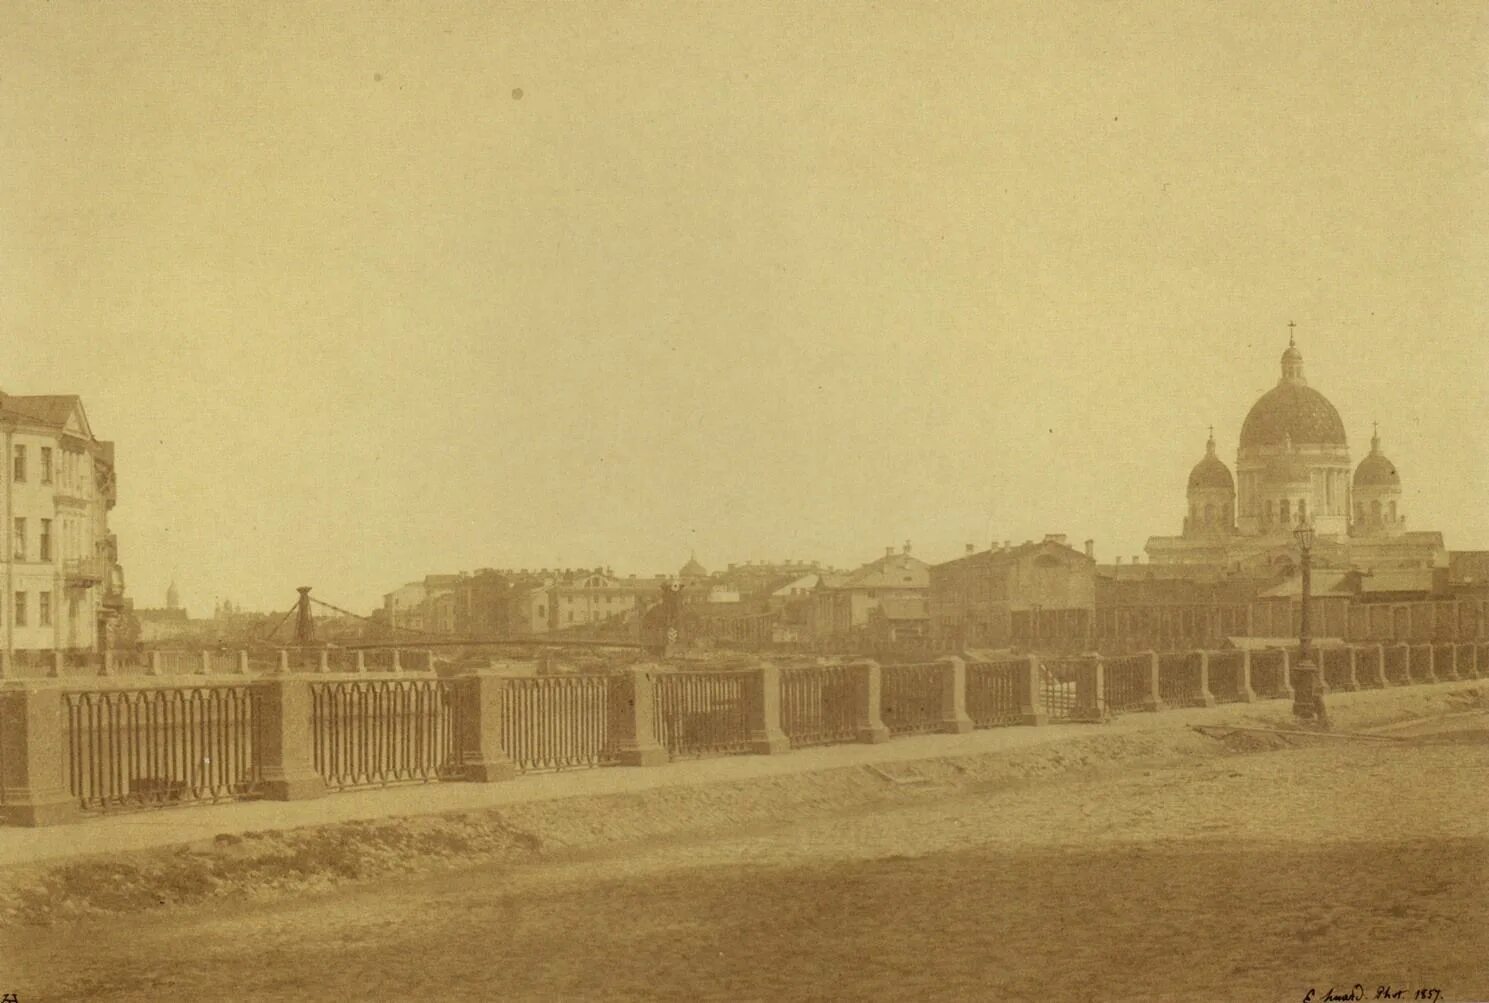 Спб 1700. Петербург 1860 год. Фотографии Санкт-Петербурга 19 век.